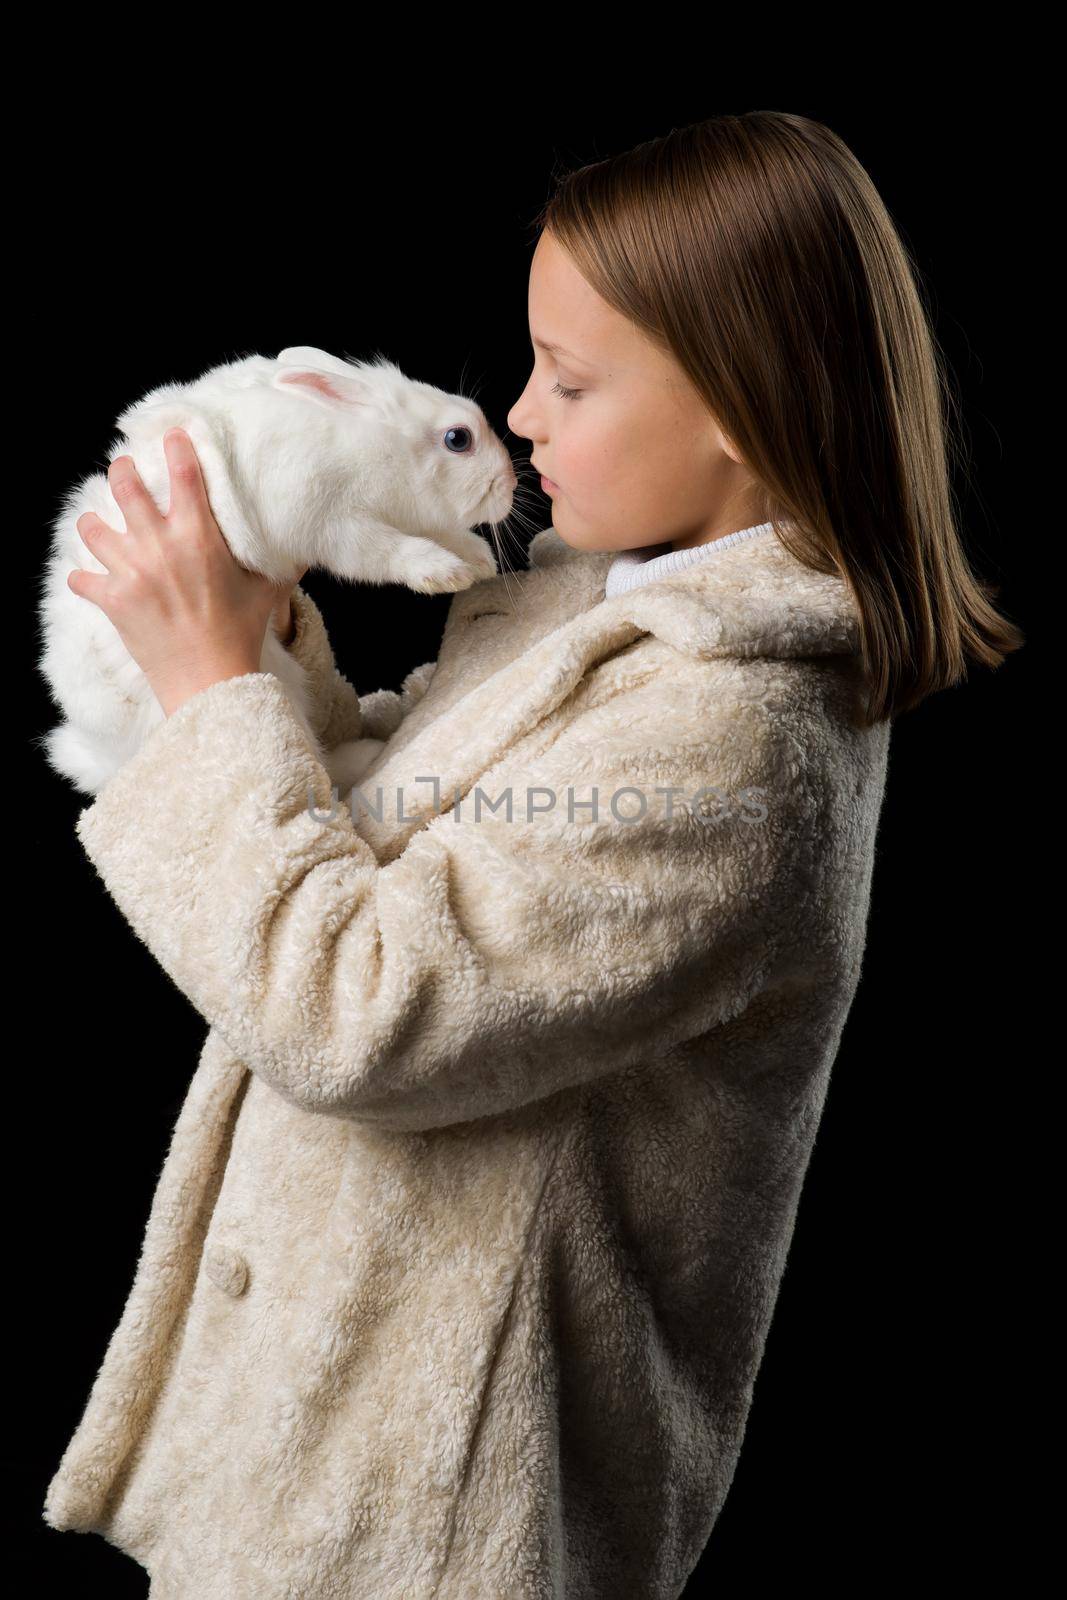 Pretty stylish girl with white rabbit by kolesnikov_studio